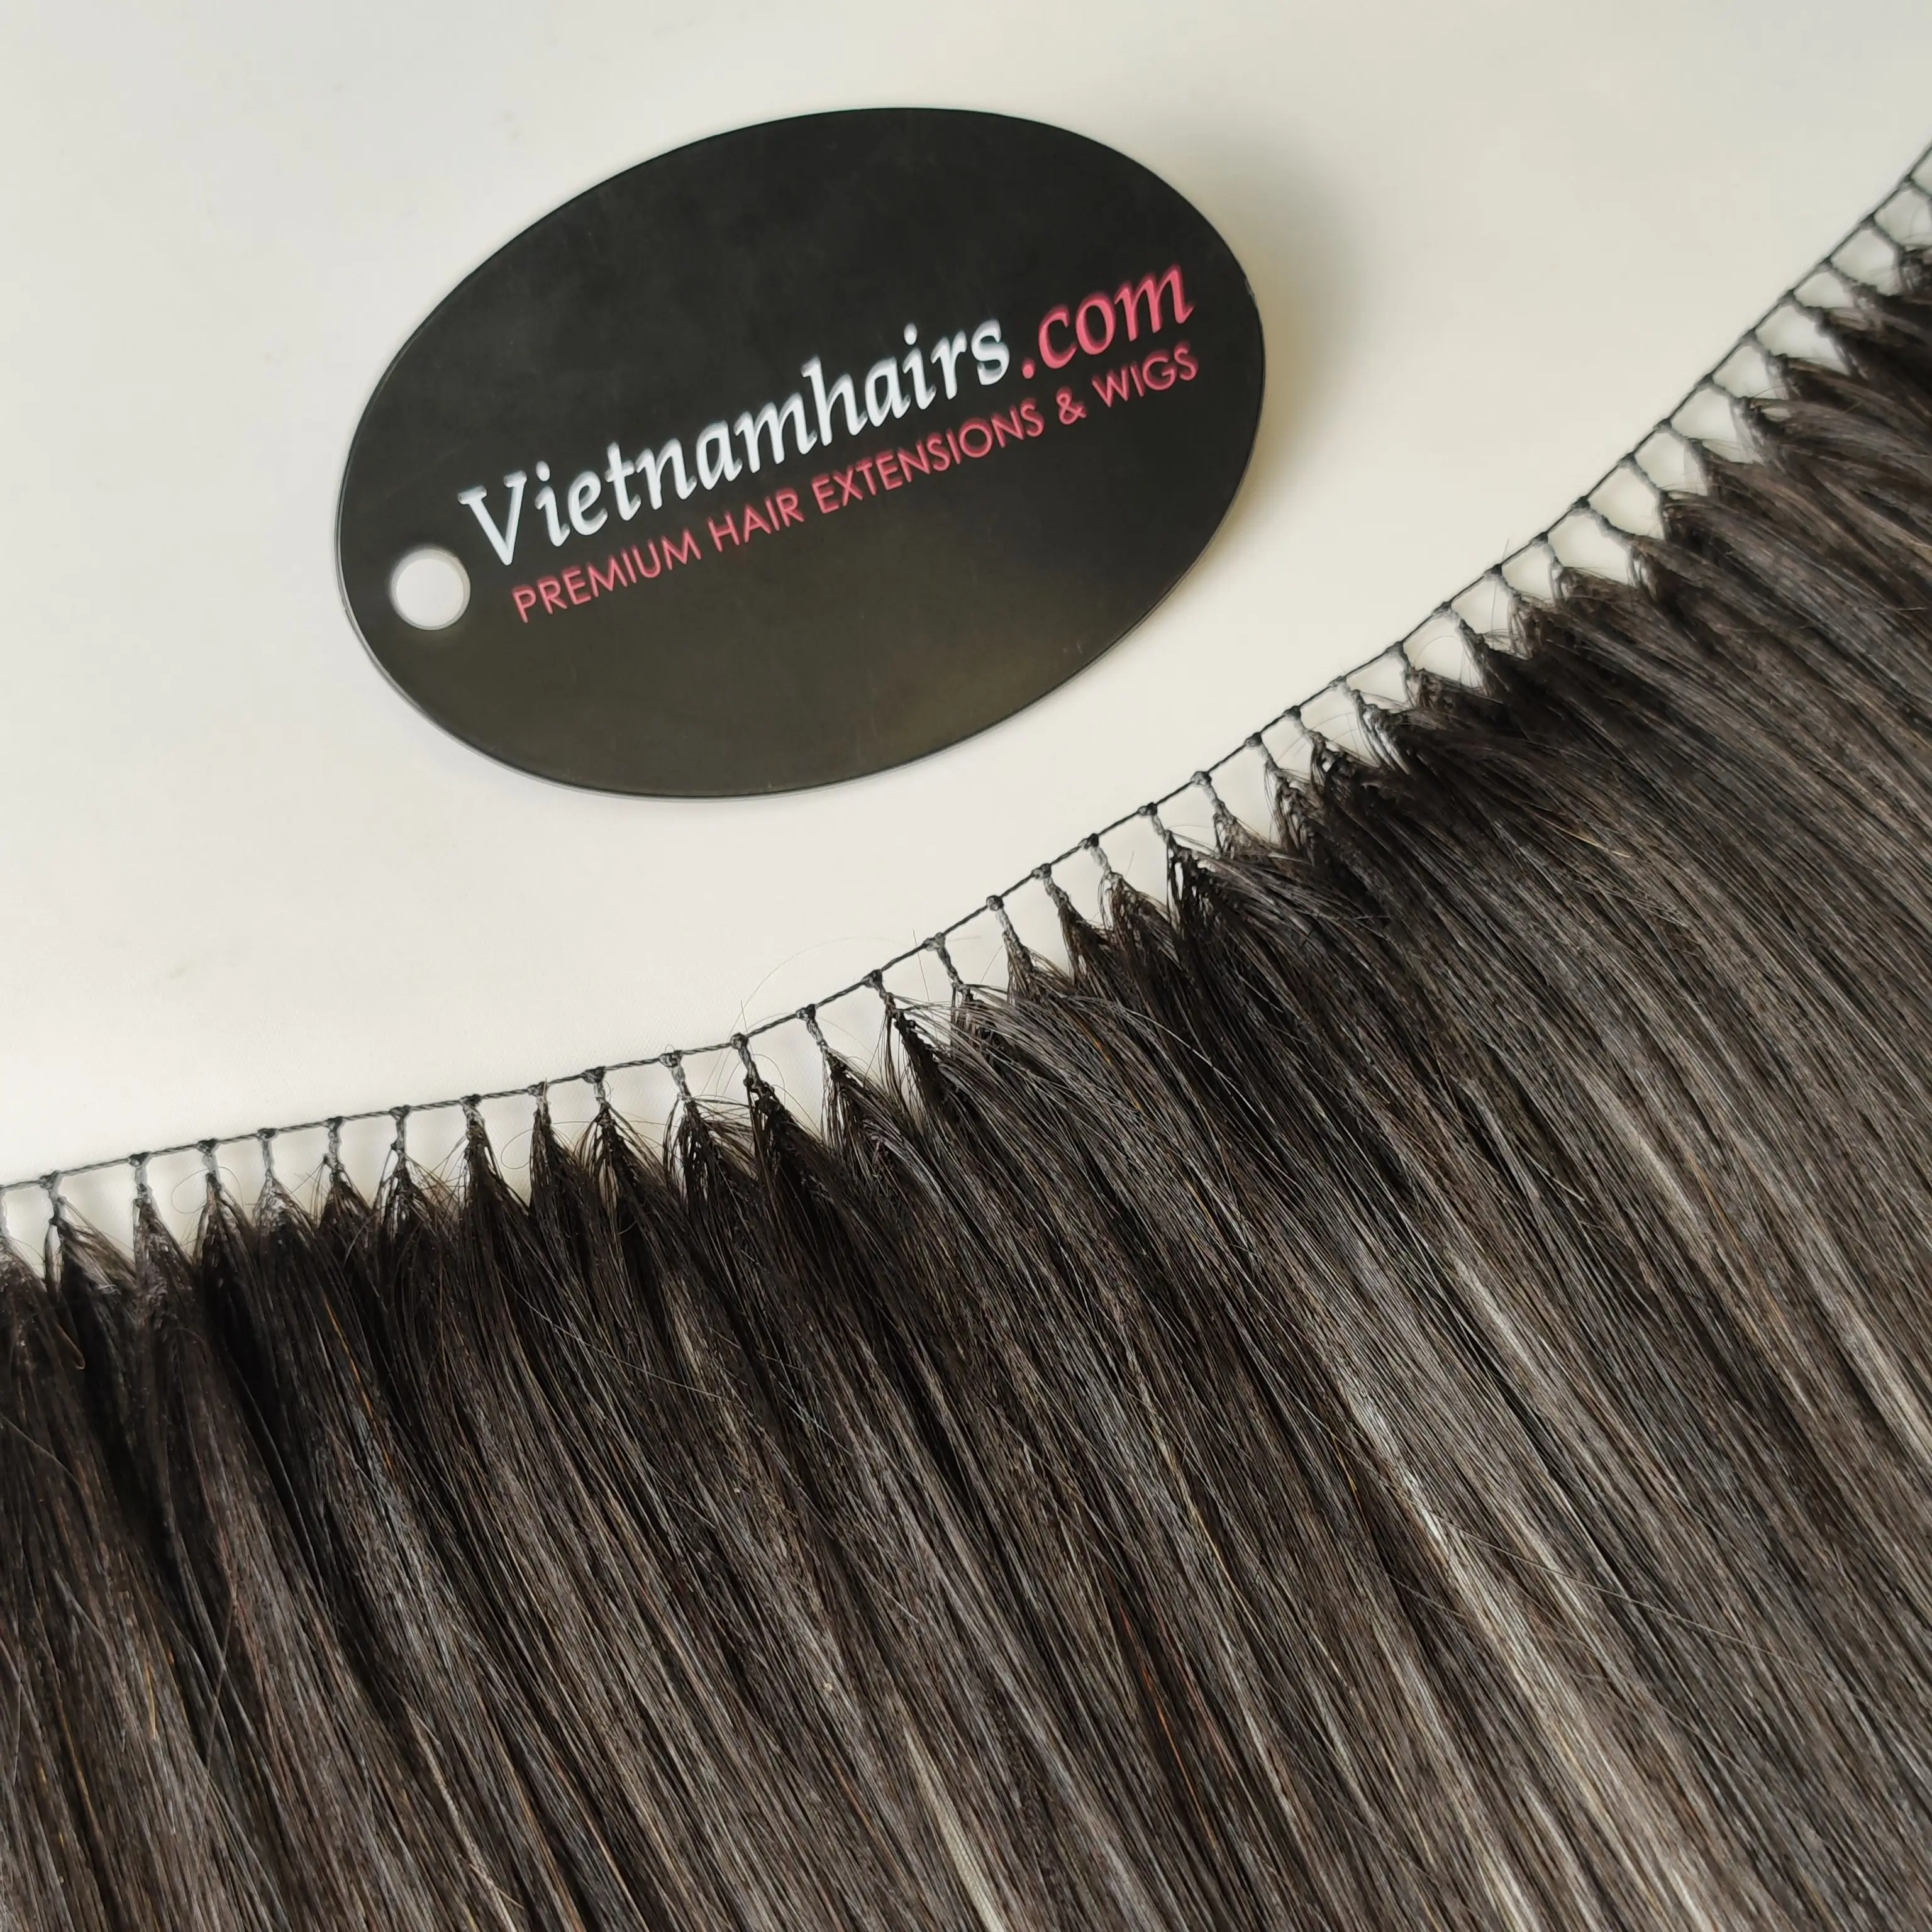 Лидер продаж, необработанные волосы и волосы из прядей во Вьетнаме, 100% натуральные человеческие, принимаем образец для продажи.